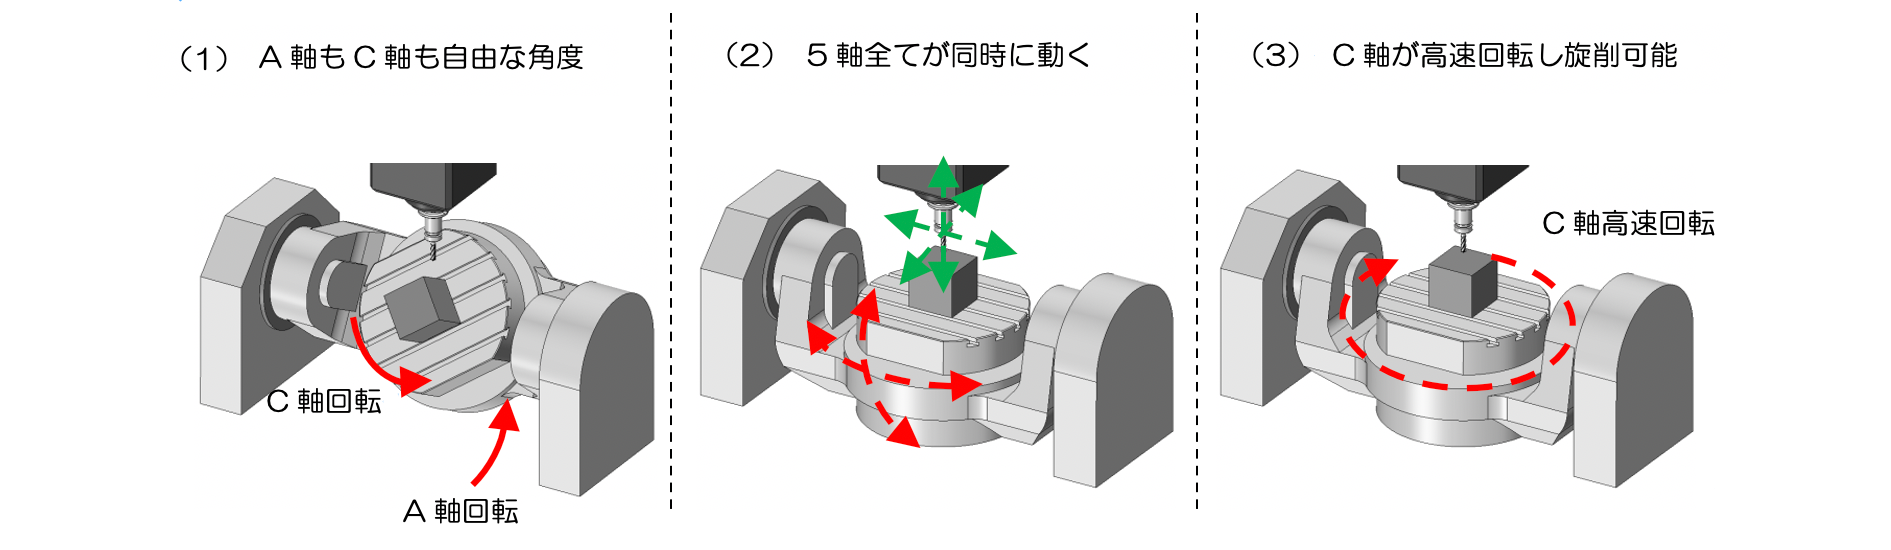 図1-3 5軸加工機の特徴